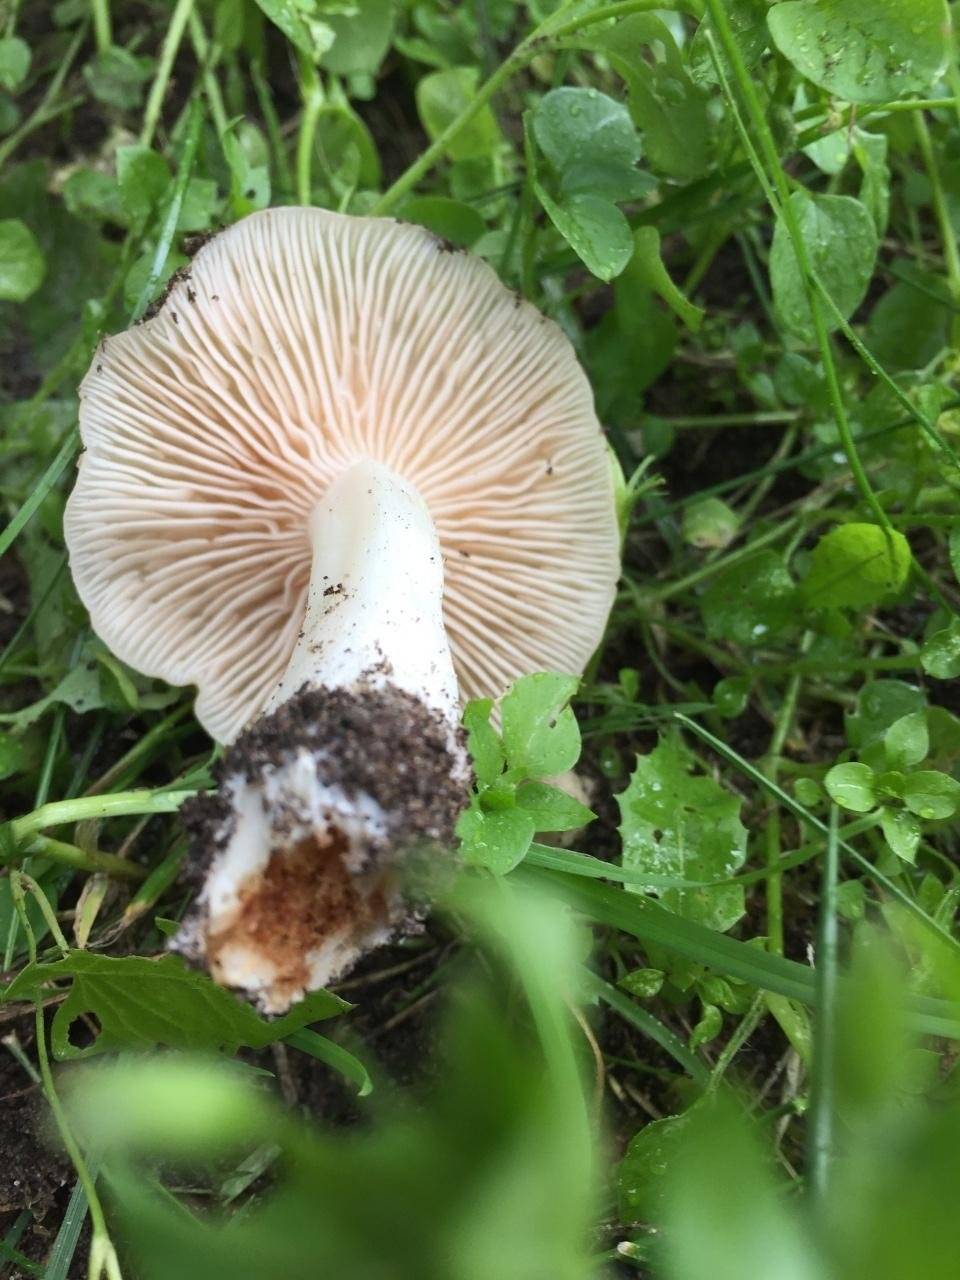 Энтолома садовая или лесная, подсливник, подабрикосовик (entoloma clypeatum): фото, описание съедобного гриба